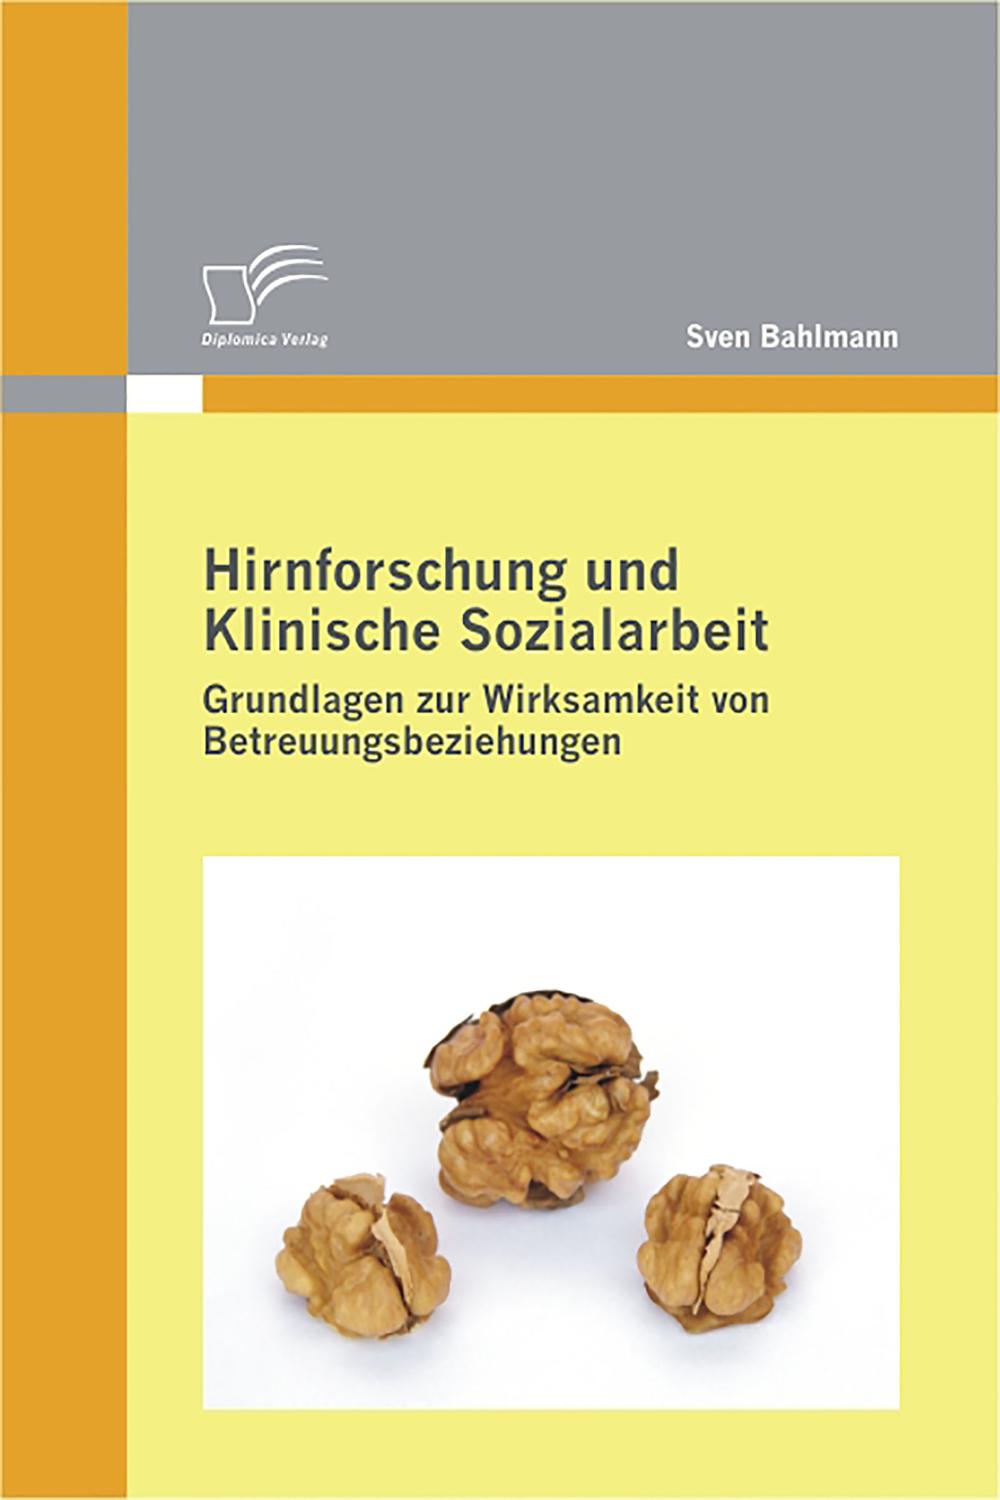 Hirnforschung und Klinische Sozialarbeit: Grundlagen zur Wirksamkeit von Betreuungsbeziehungen - Sven Bahlmann